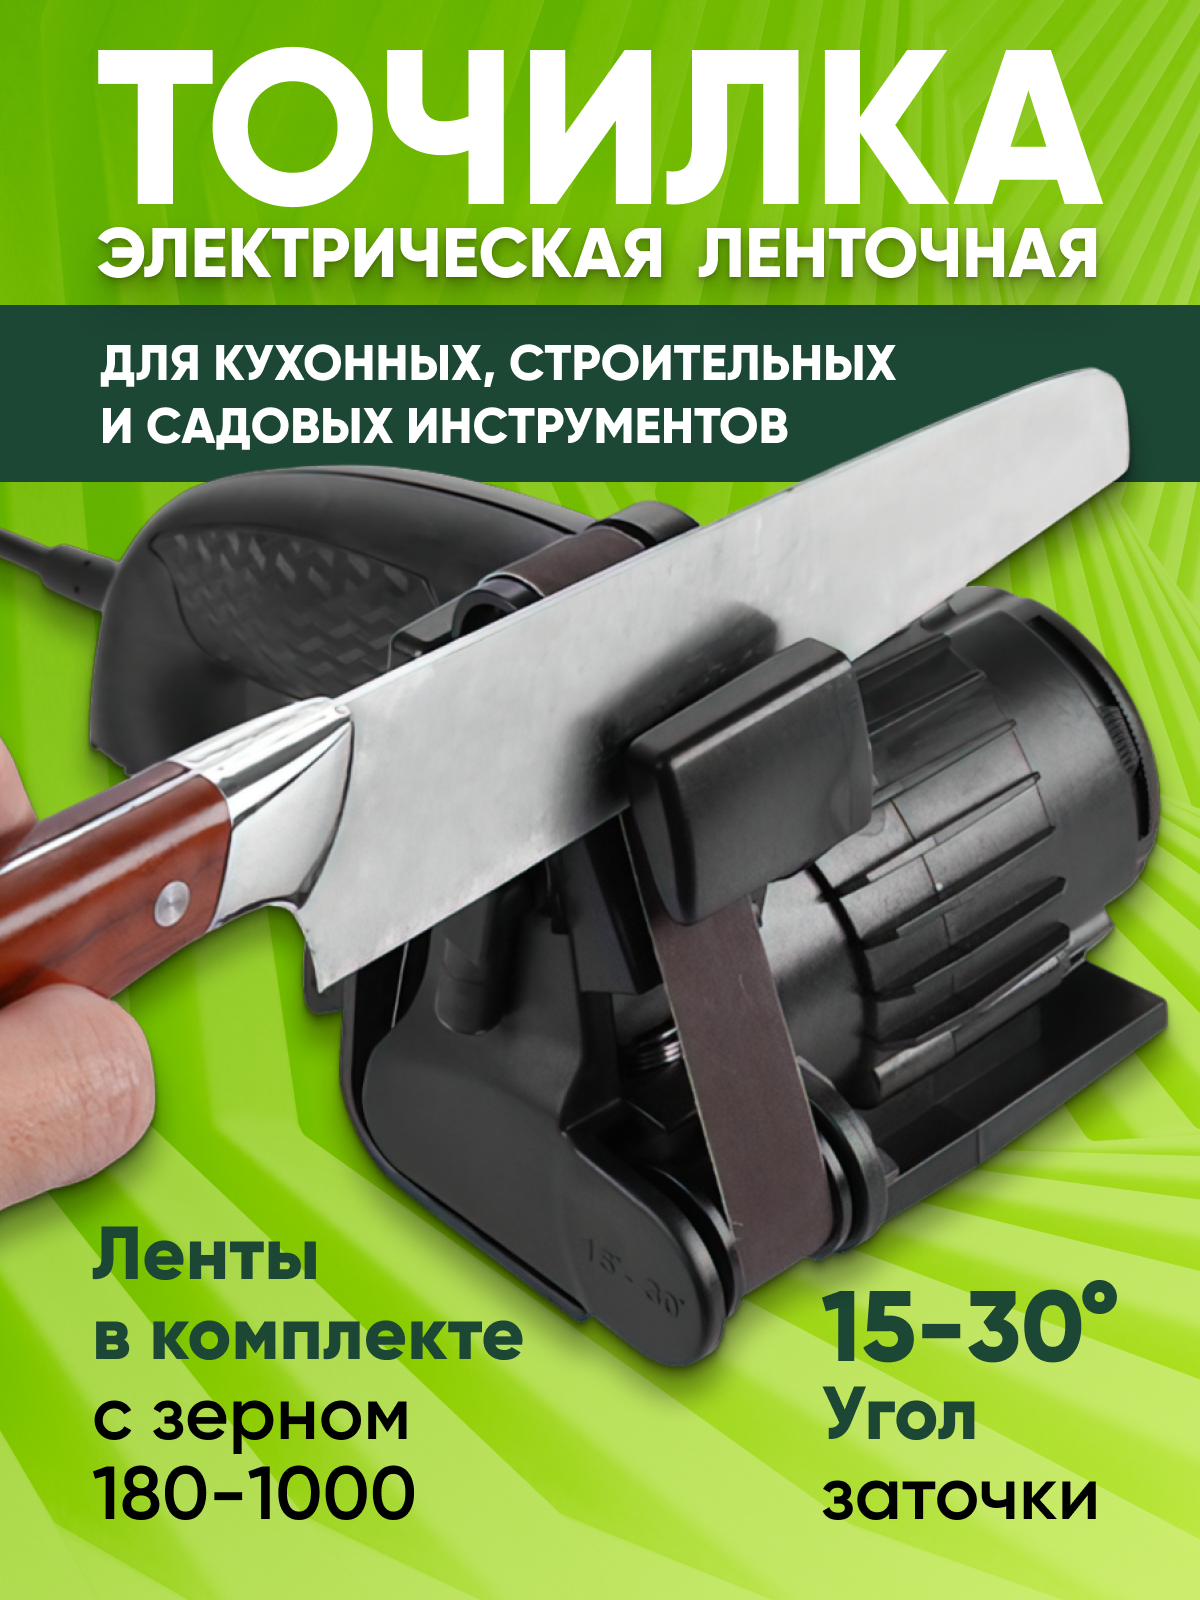 Электрическая точилка для ножей и инструментов, шлифовка, лента 19 мм, регулируемый угол заточки